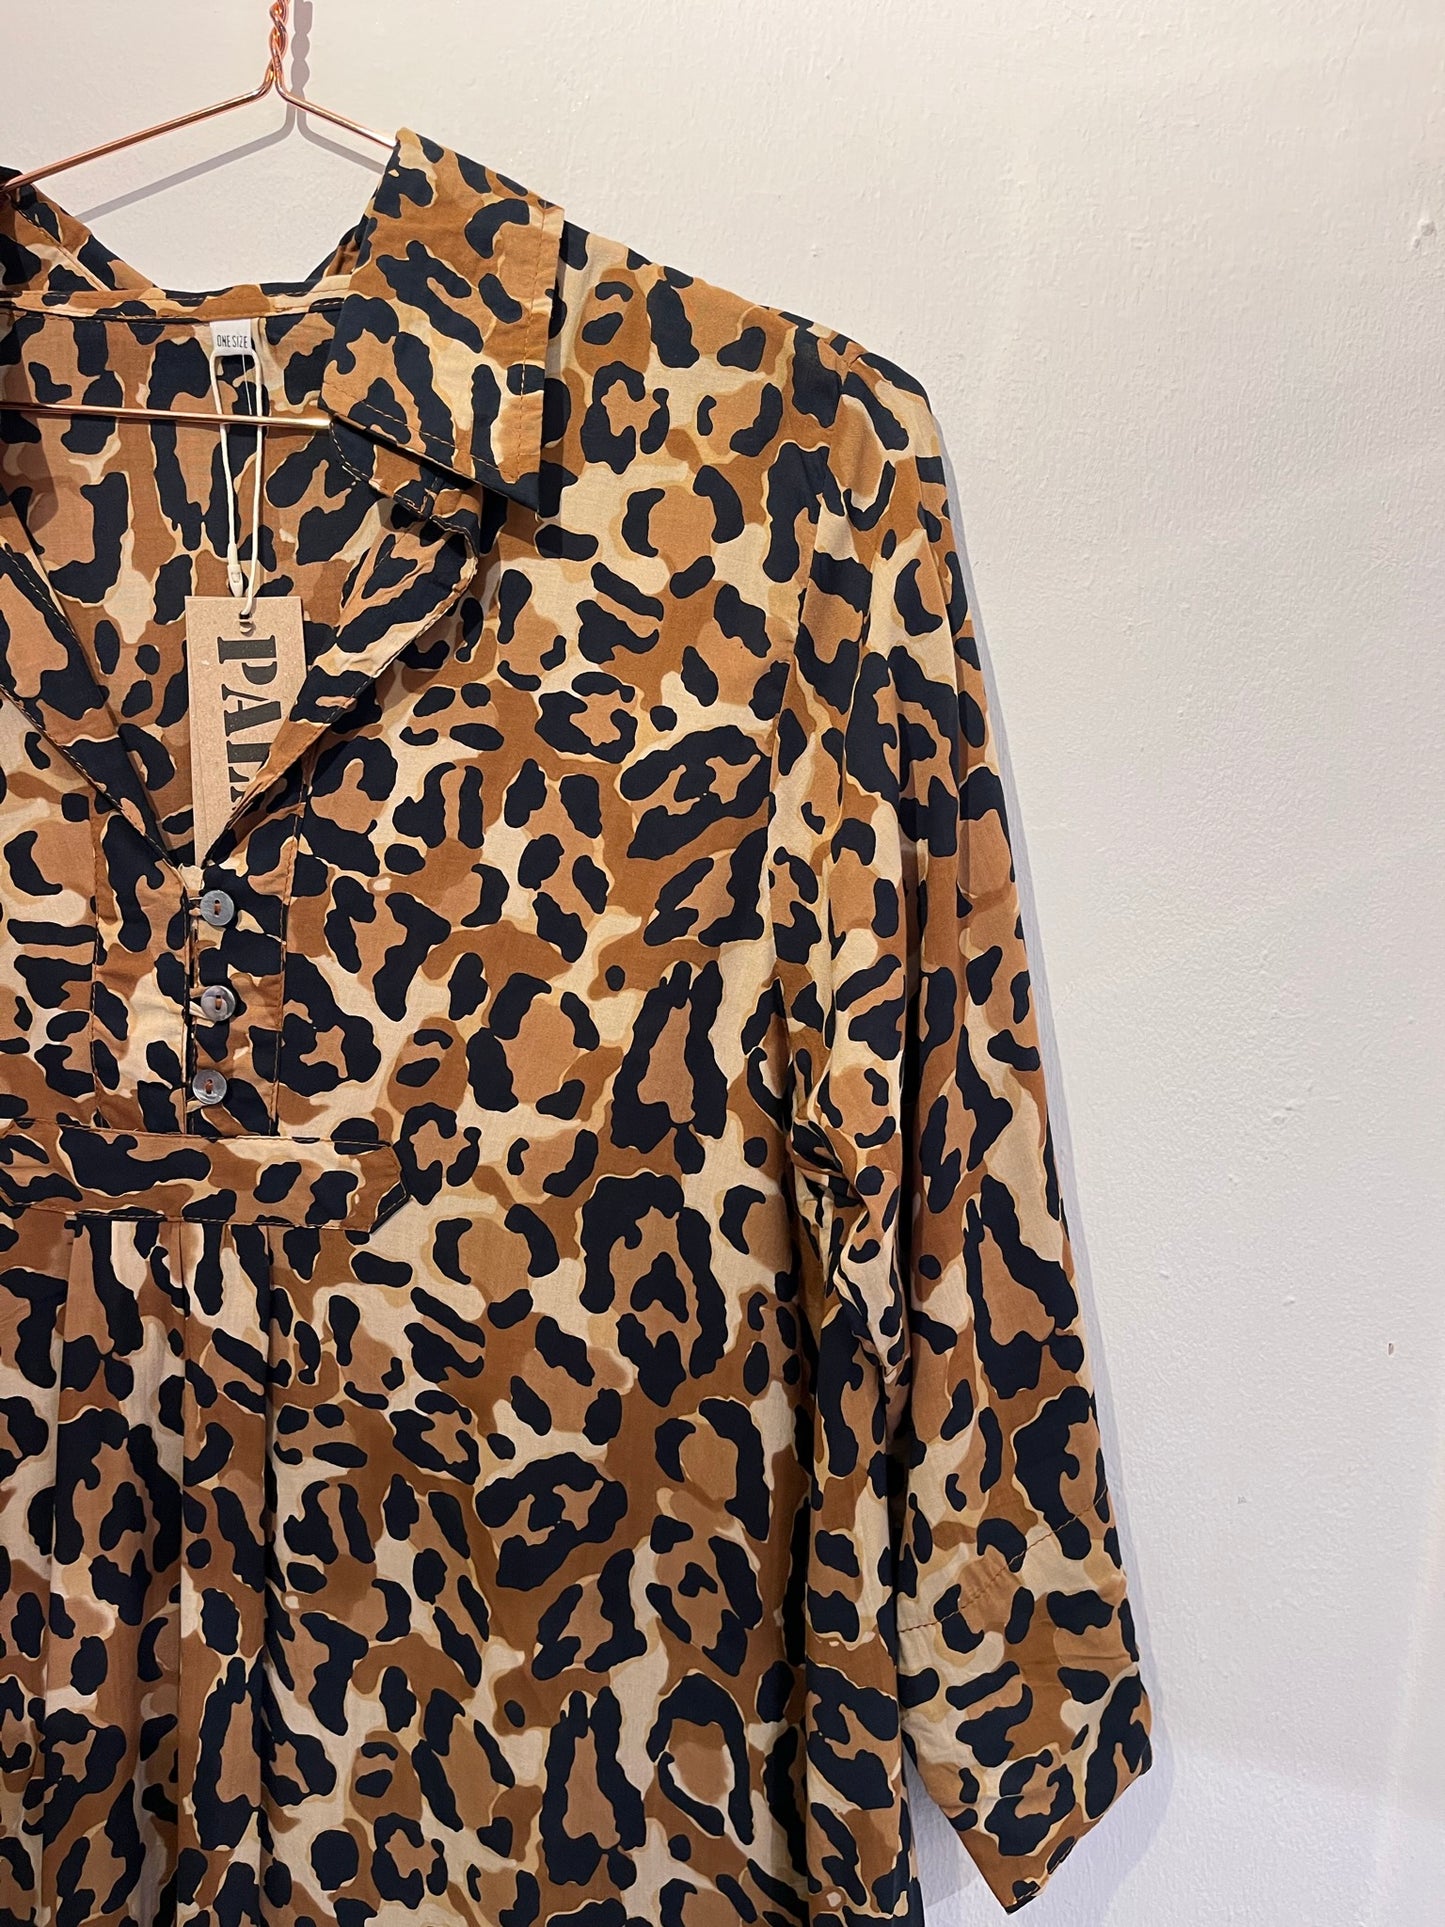 Palme Short Dress - leopard